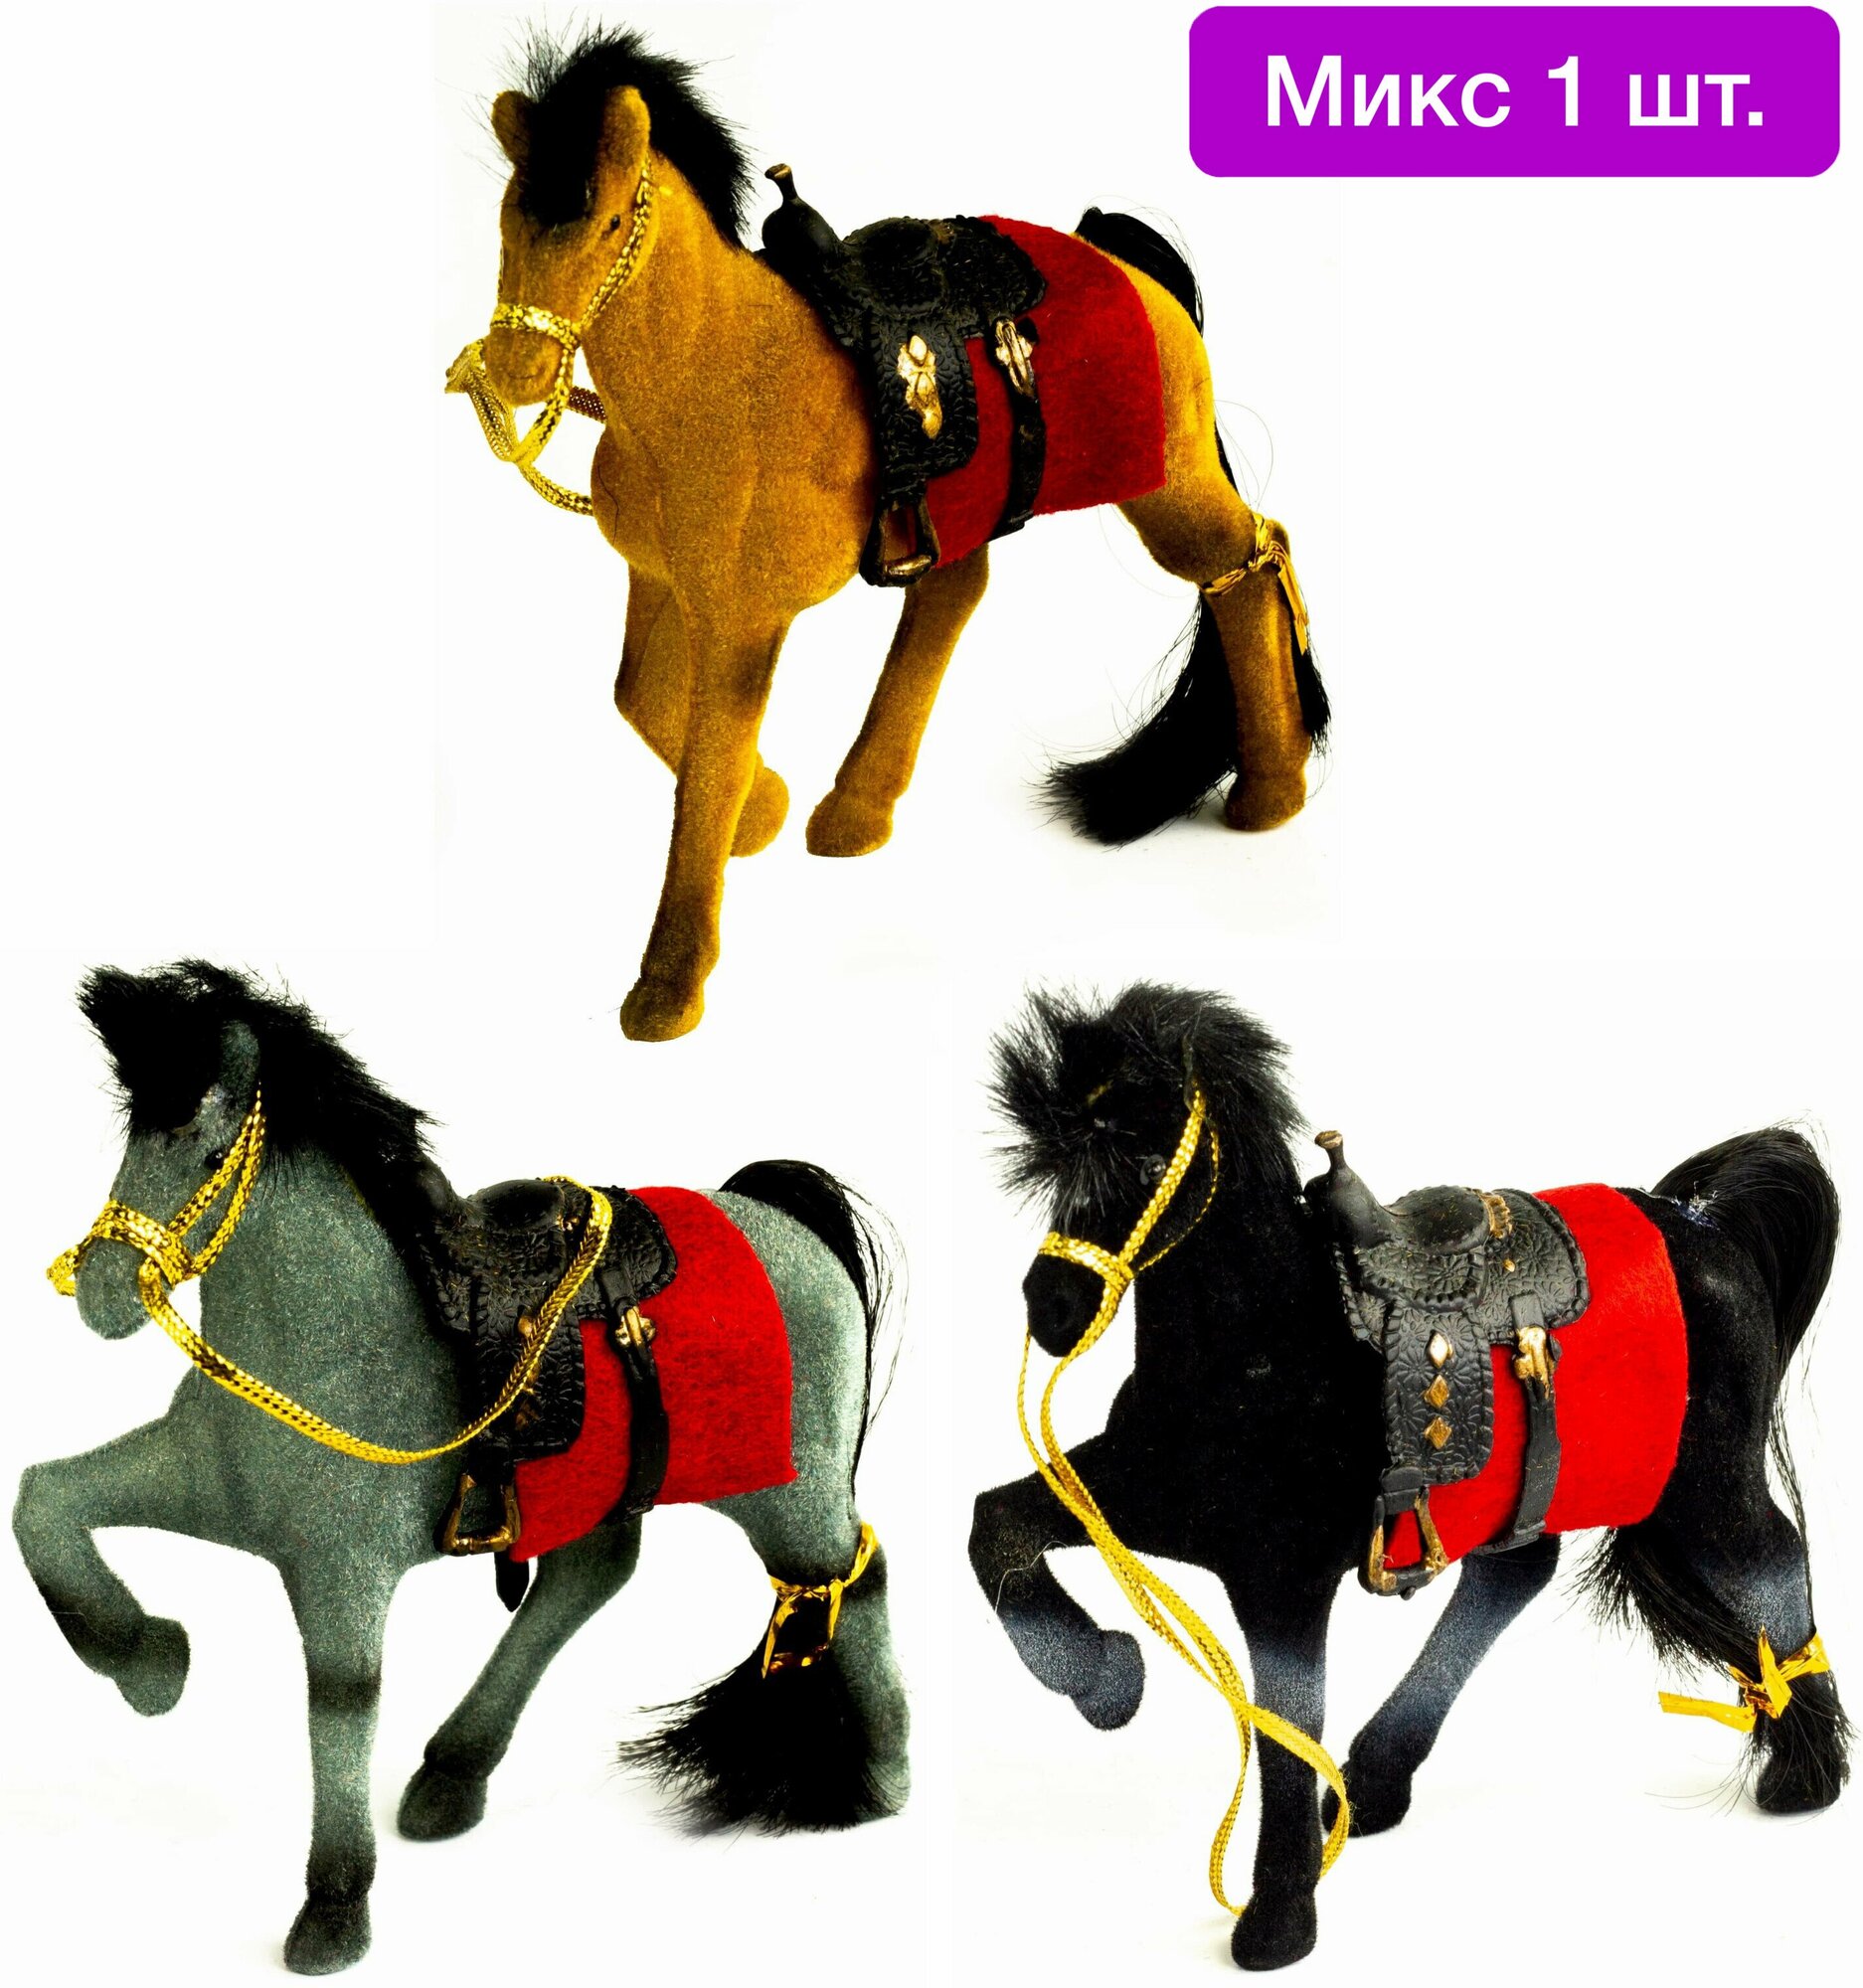 Фигурка игрушка для девочек лошадка статичная 12 см, 1 шт, подарок детям для мальчика микс на день рождения новый год 23 февраля 8 марта